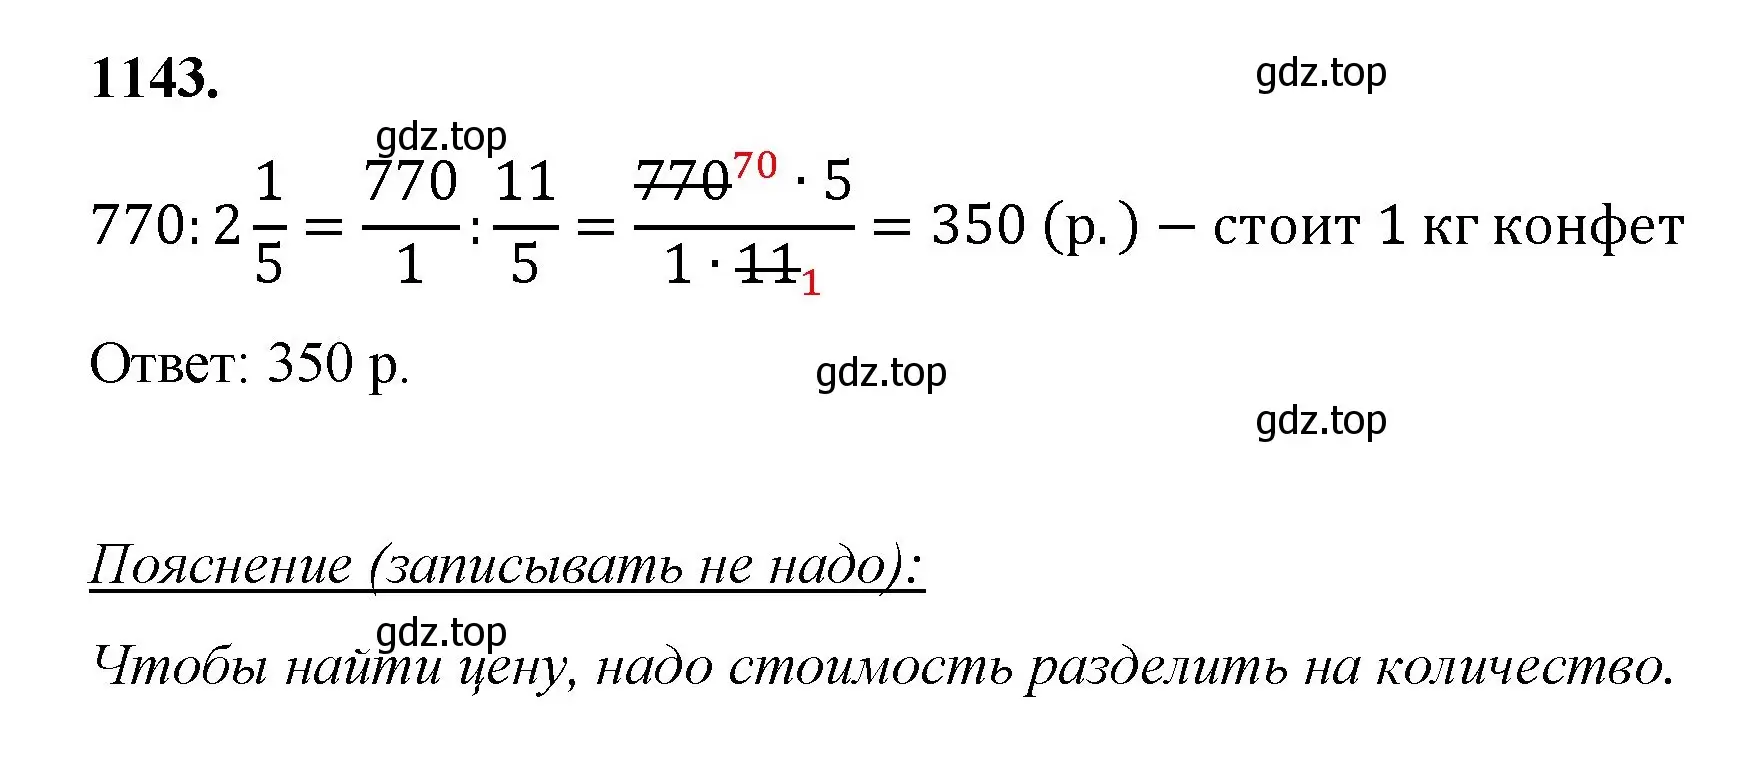 Решение номер 1143 (страница 255) гдз по математике 5 класс Мерзляк, Полонский, учебник